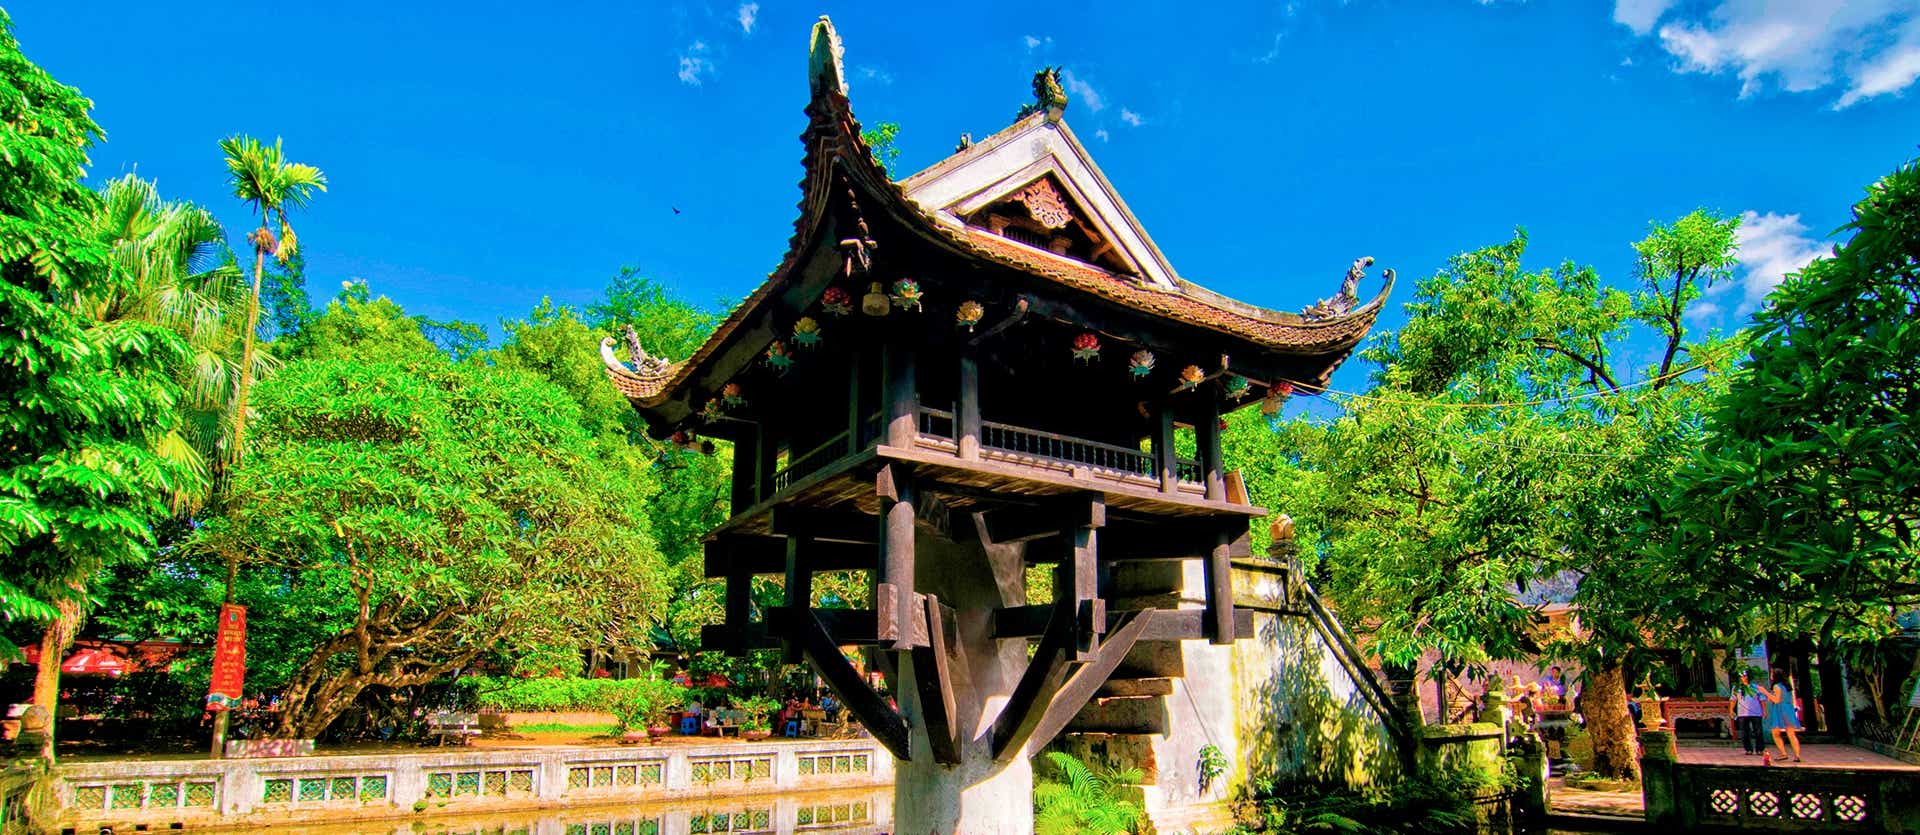 Pagoda del Pilar Único <span class="iconos separador"></span> Hanoi